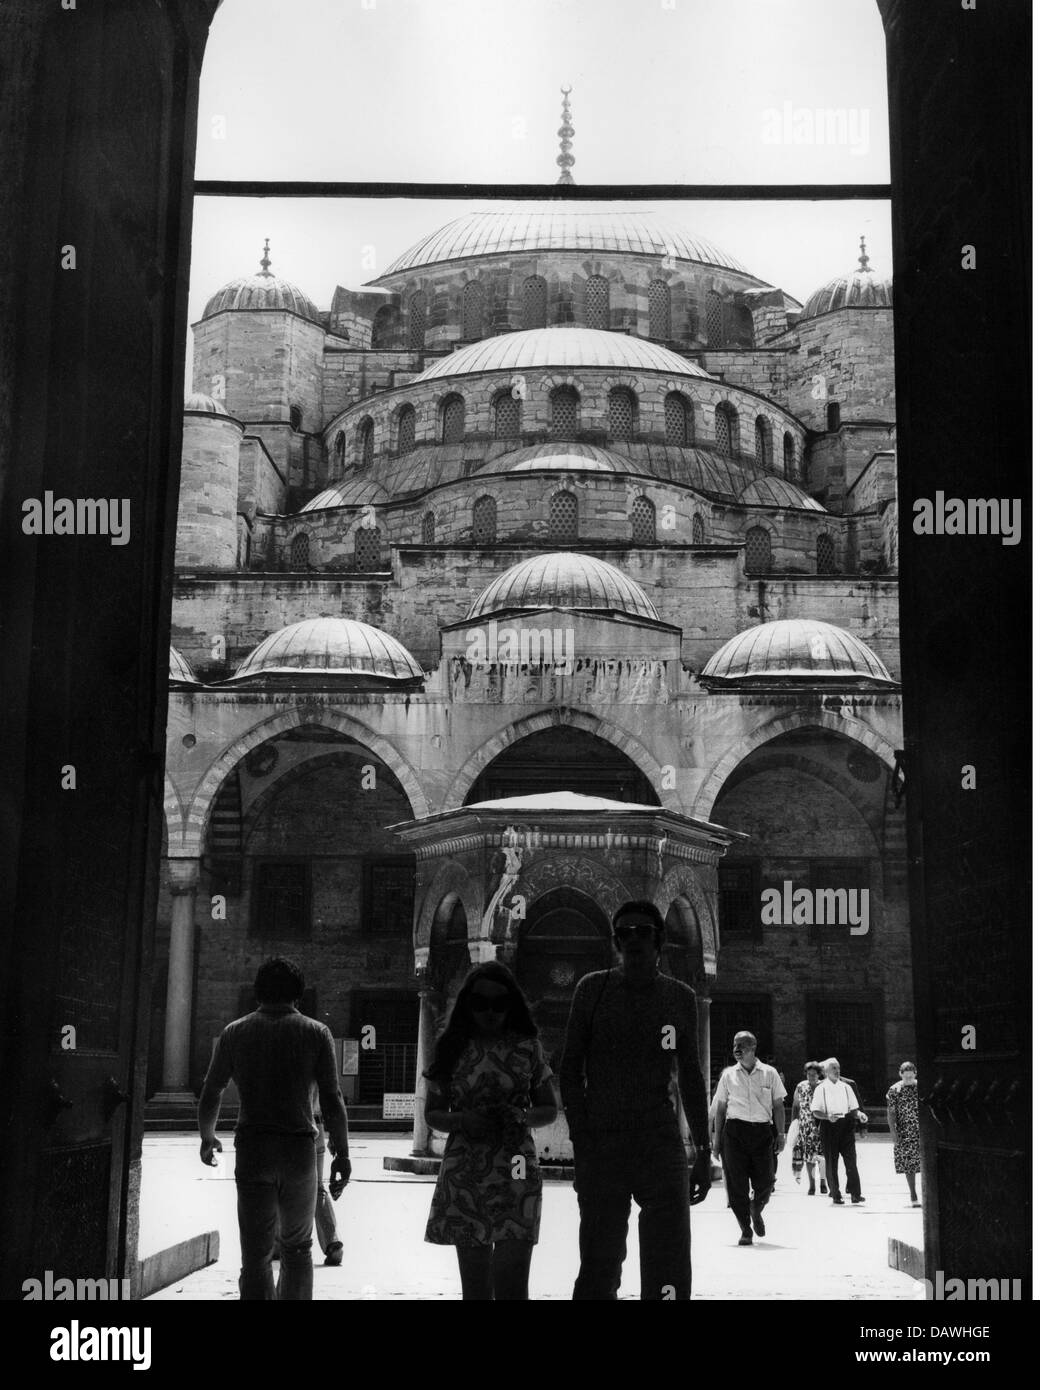 Géographie/voyage, Turquie, villes, Istanbul, bâtiments, Mosquée Sultan Ahmed (également: Mosquée bleue), construit: 1609 - 1616, par ordre de Sultan Ahmed, entrée principale, vue extérieure, années 1960, droits additionnels-Clearences-non disponible Banque D'Images